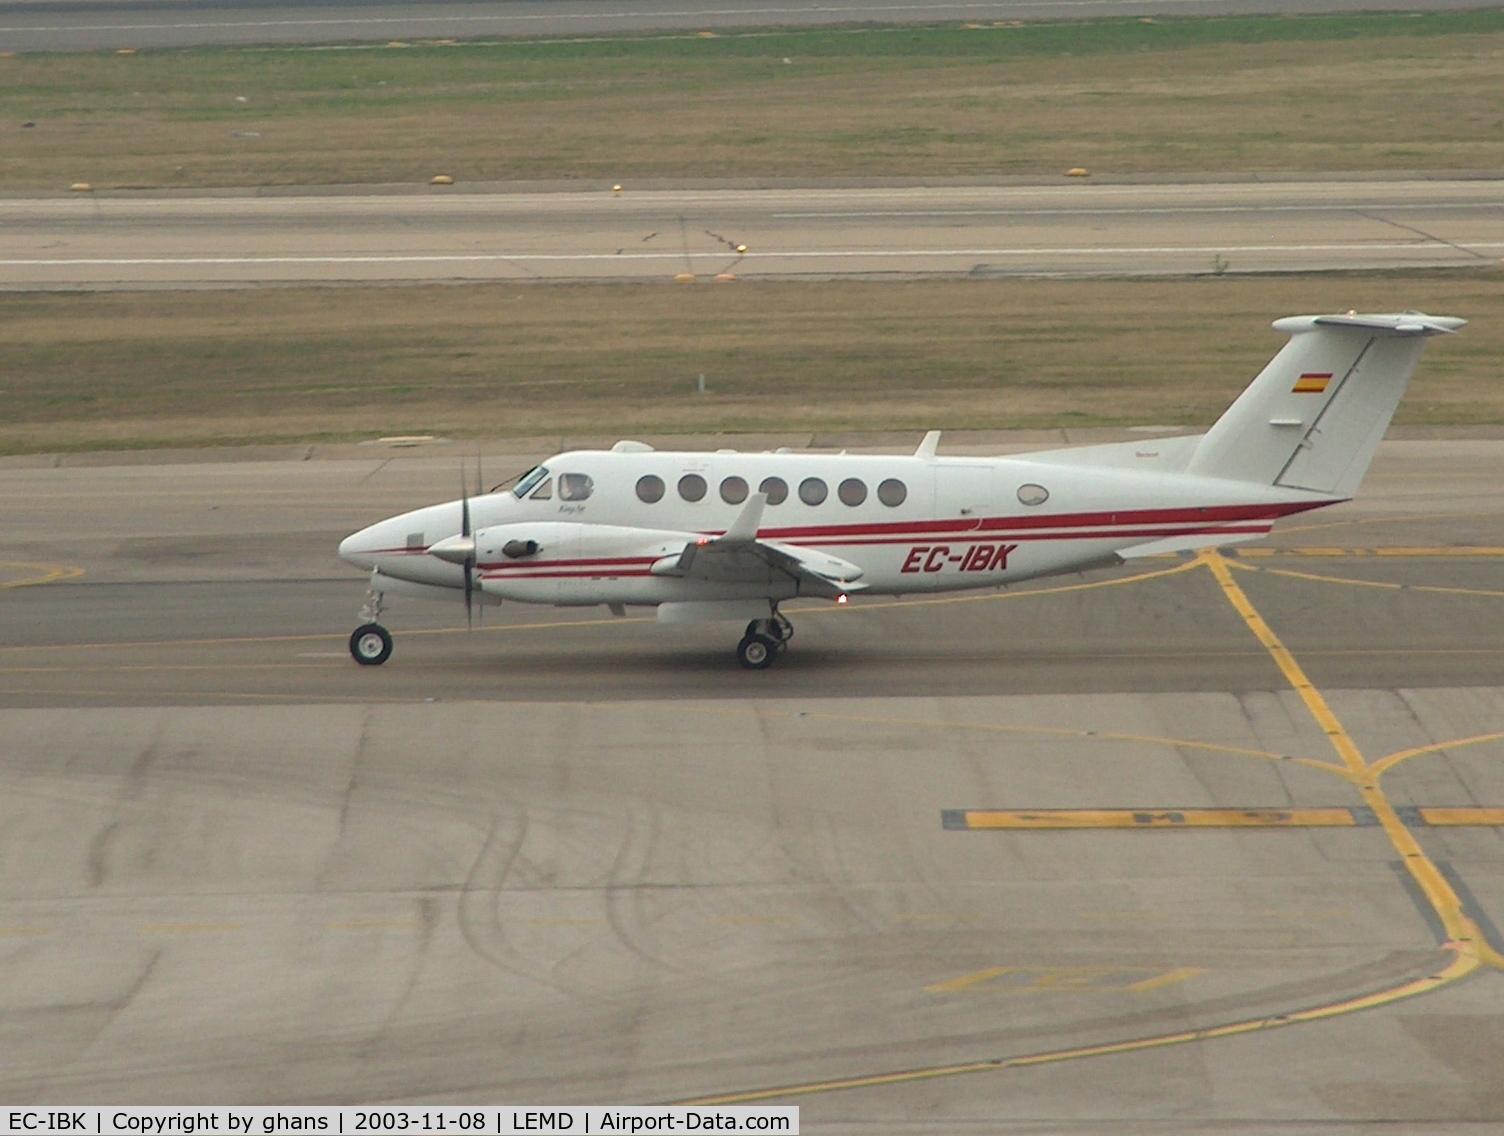 EC-IBK, 2001 Beech Super King Air 350 C/N FL-328, Gestair